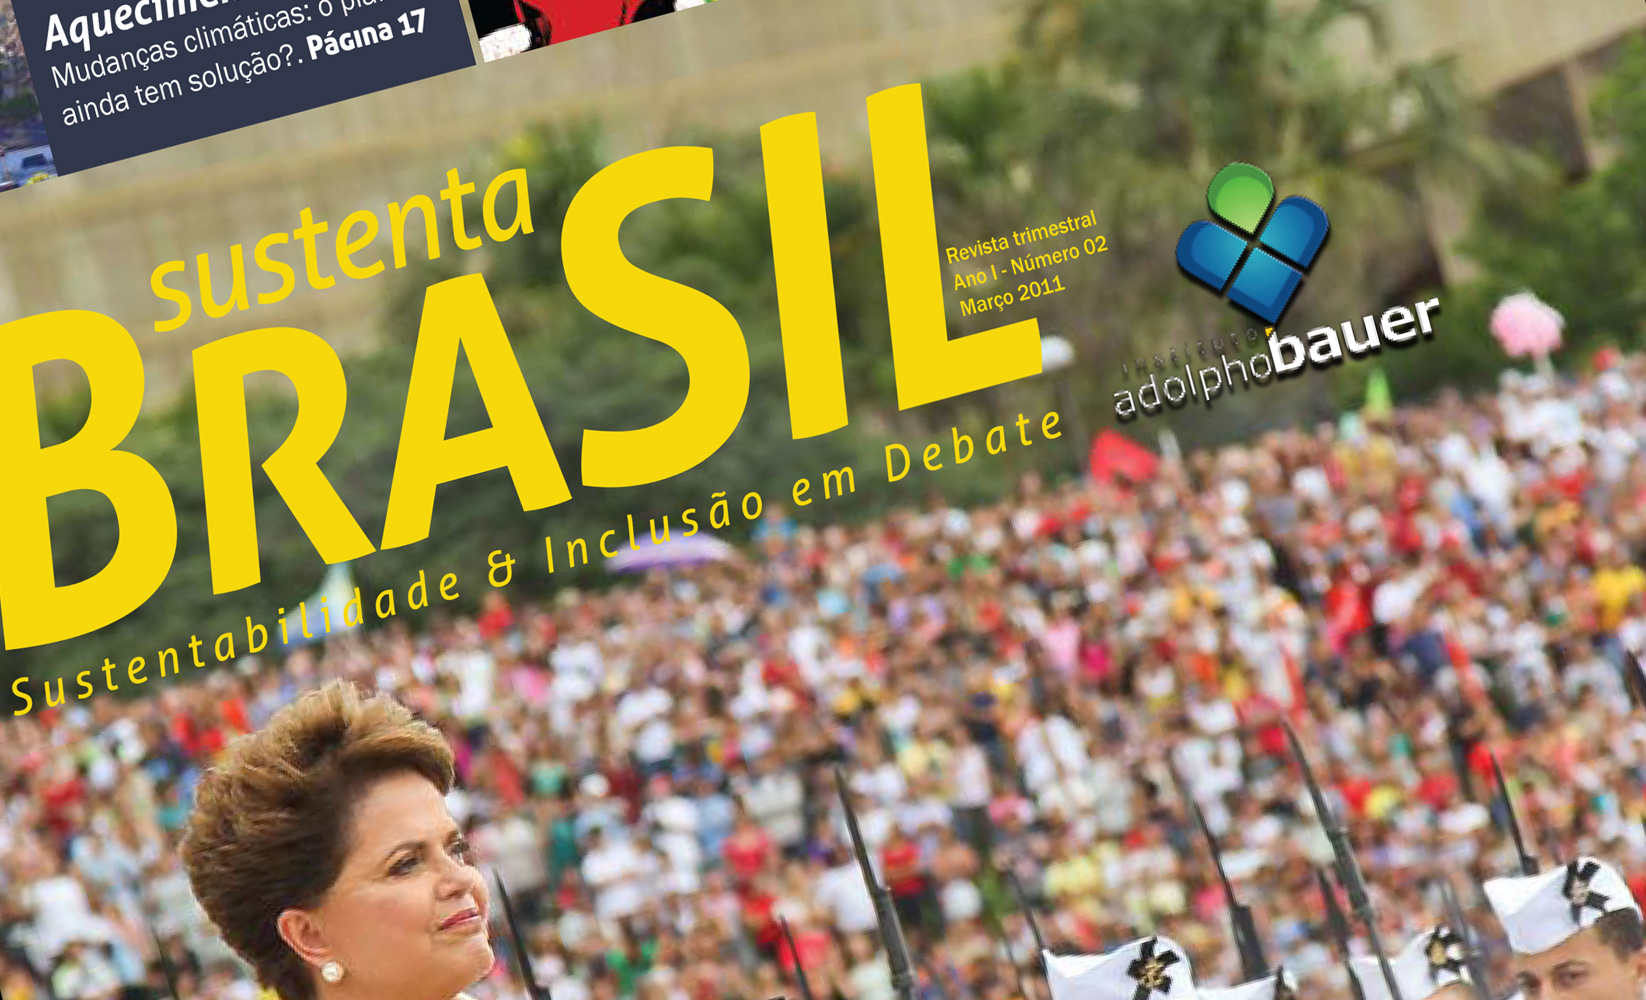 Revista Sustenta Brasil ed 02